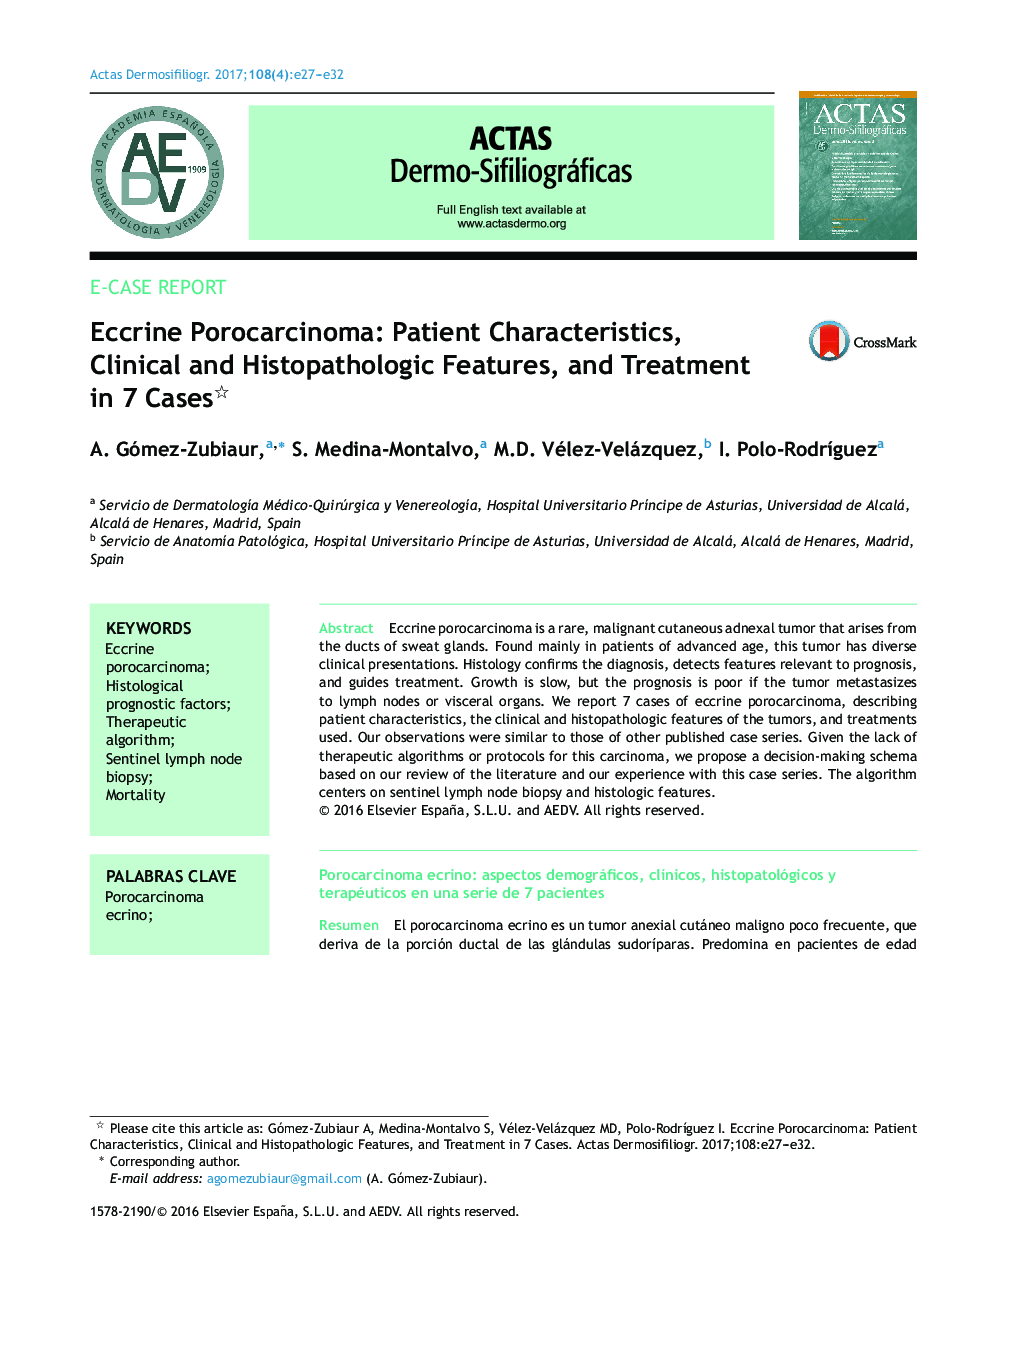 اپوکریسینوما اکریین: ویژگی های بیمار، ویژگی های بالینی و هیستوپاتولوژیک و درمان در 7 مورد 